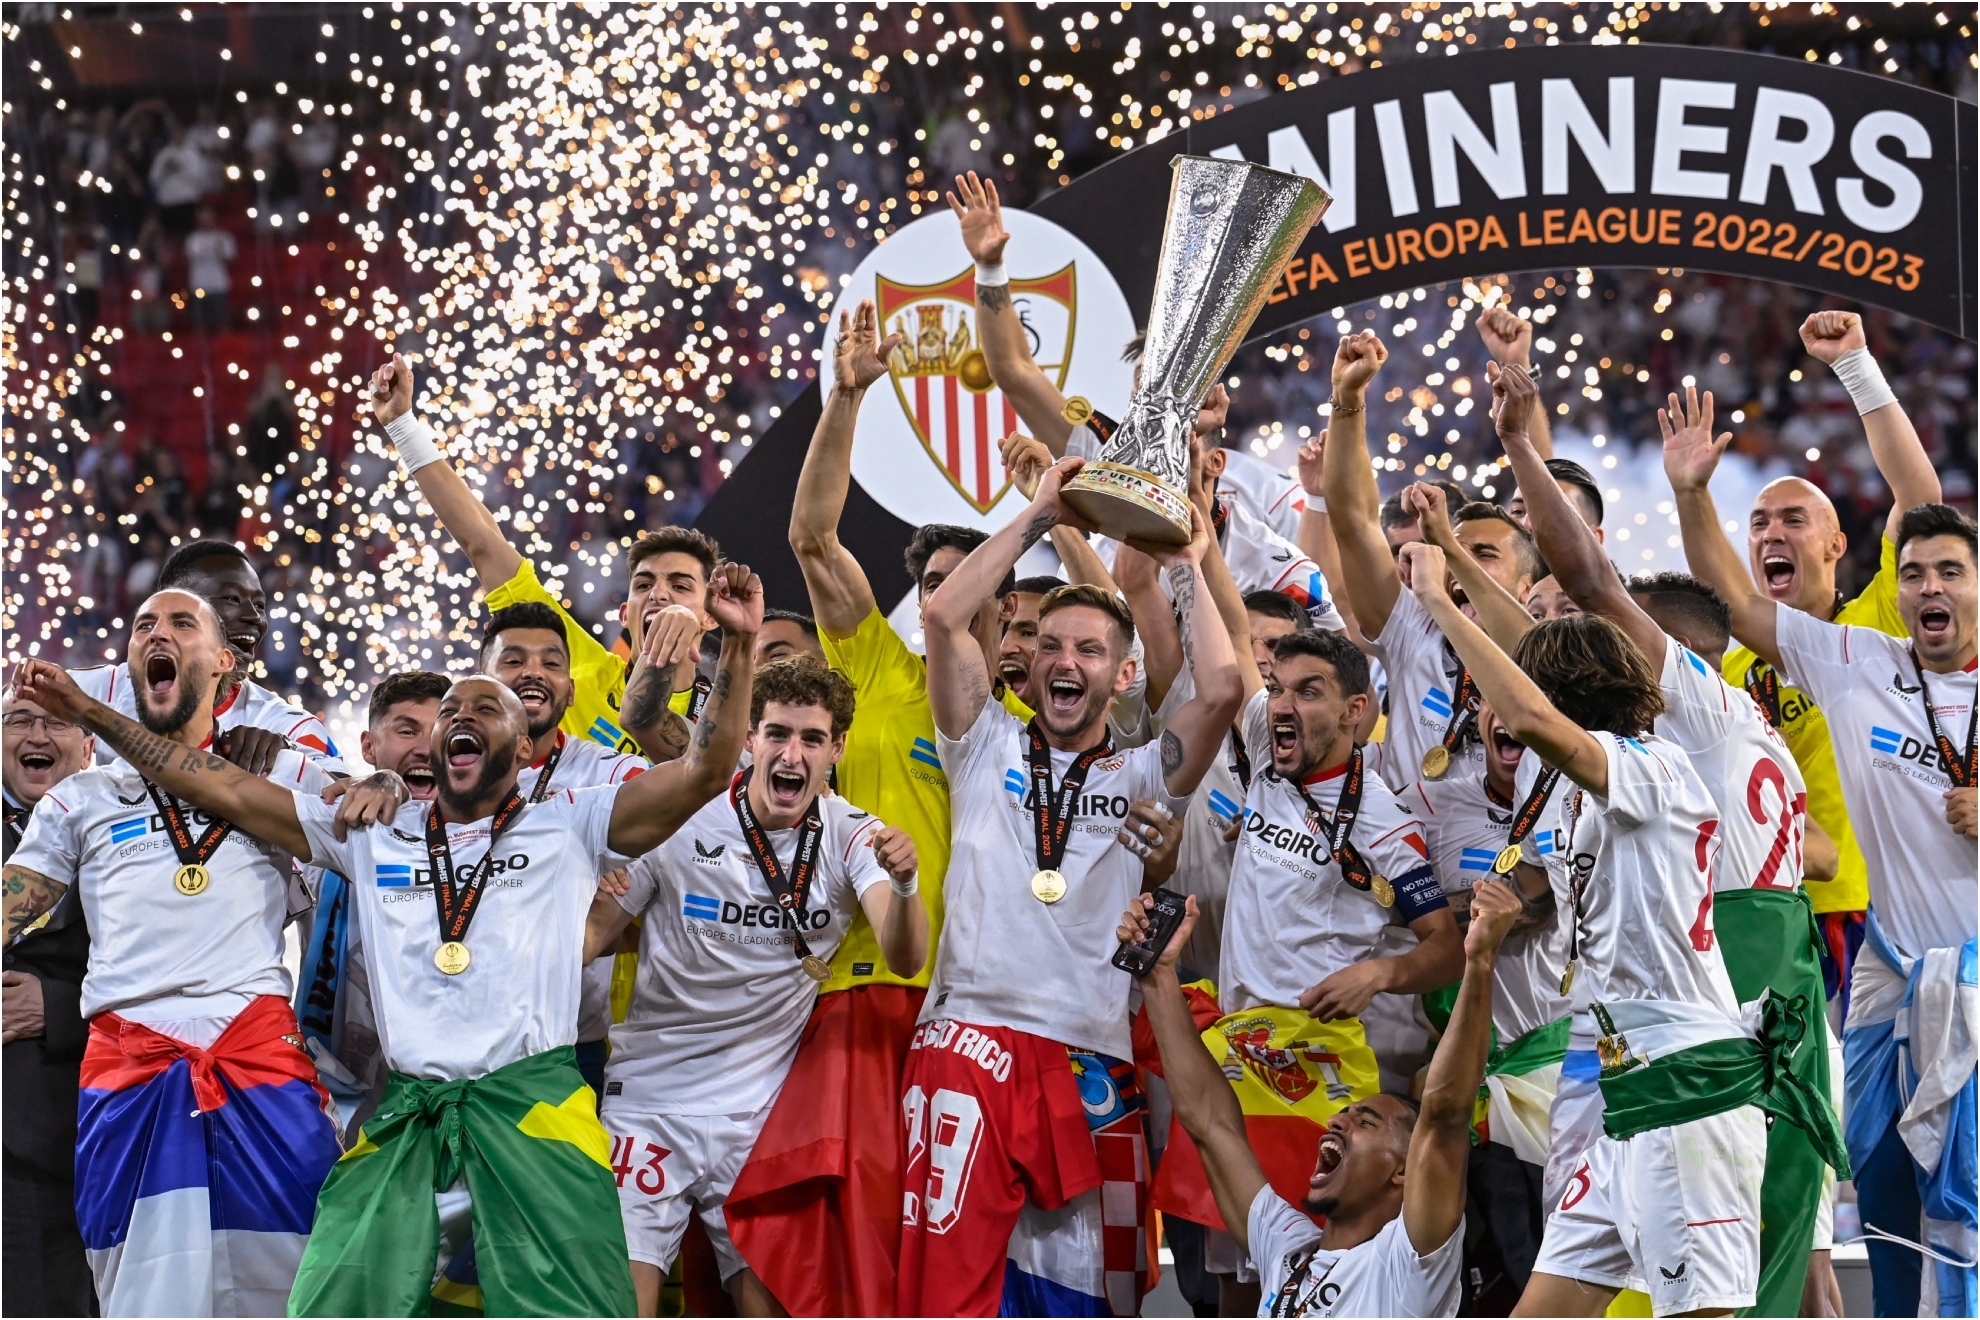 Los sevillistas levantan la copa Europa League.